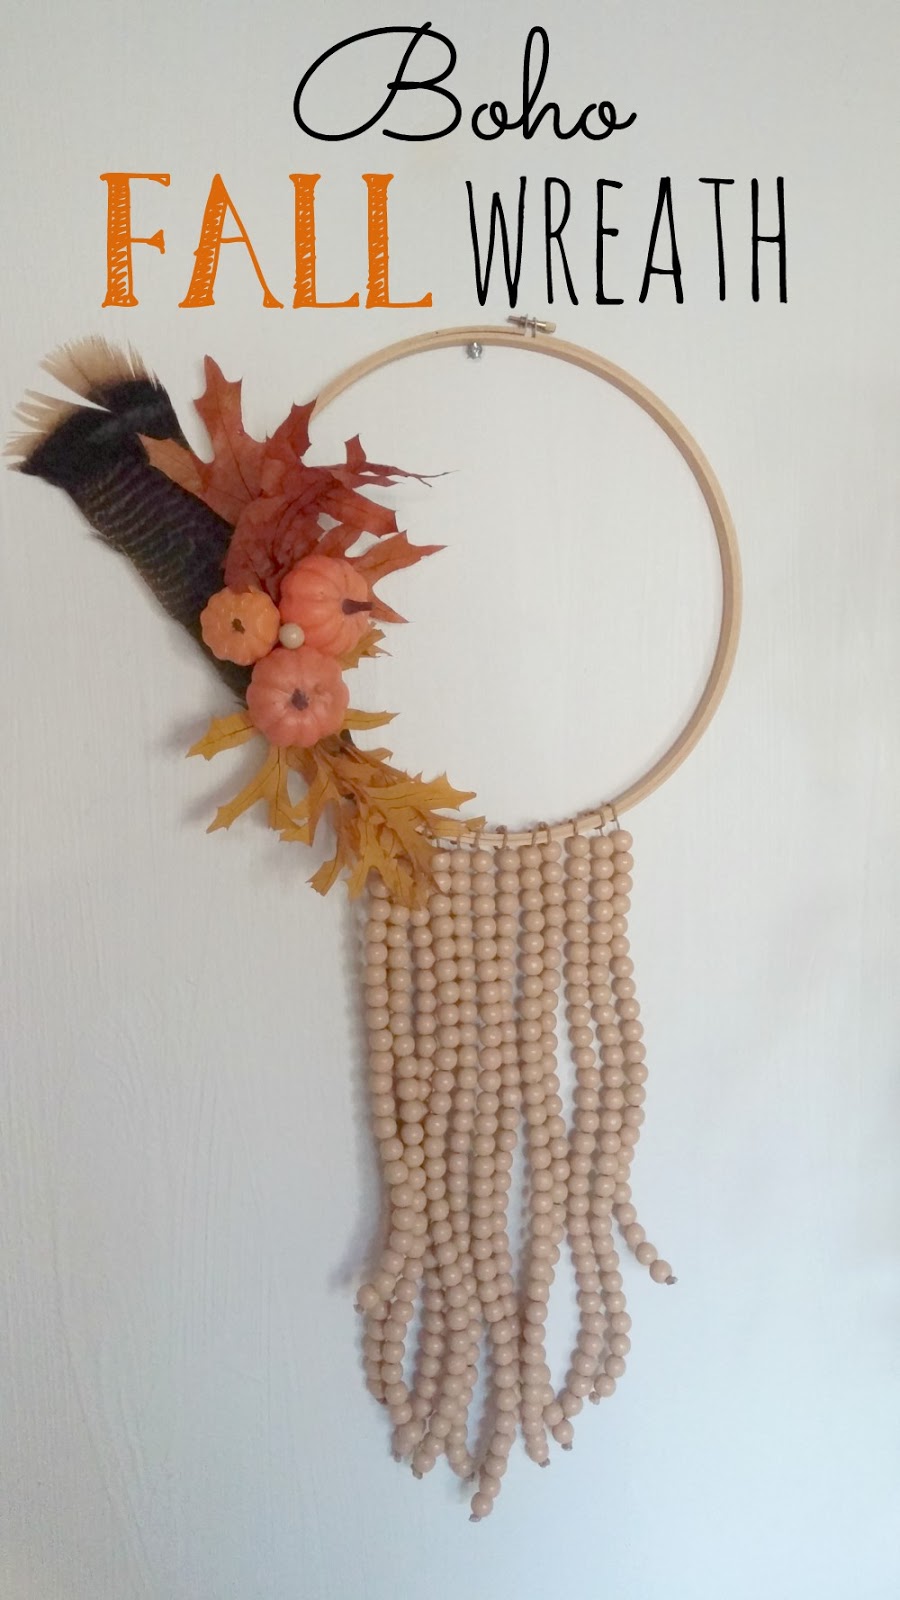 Repurposed embroidery hoop wreath